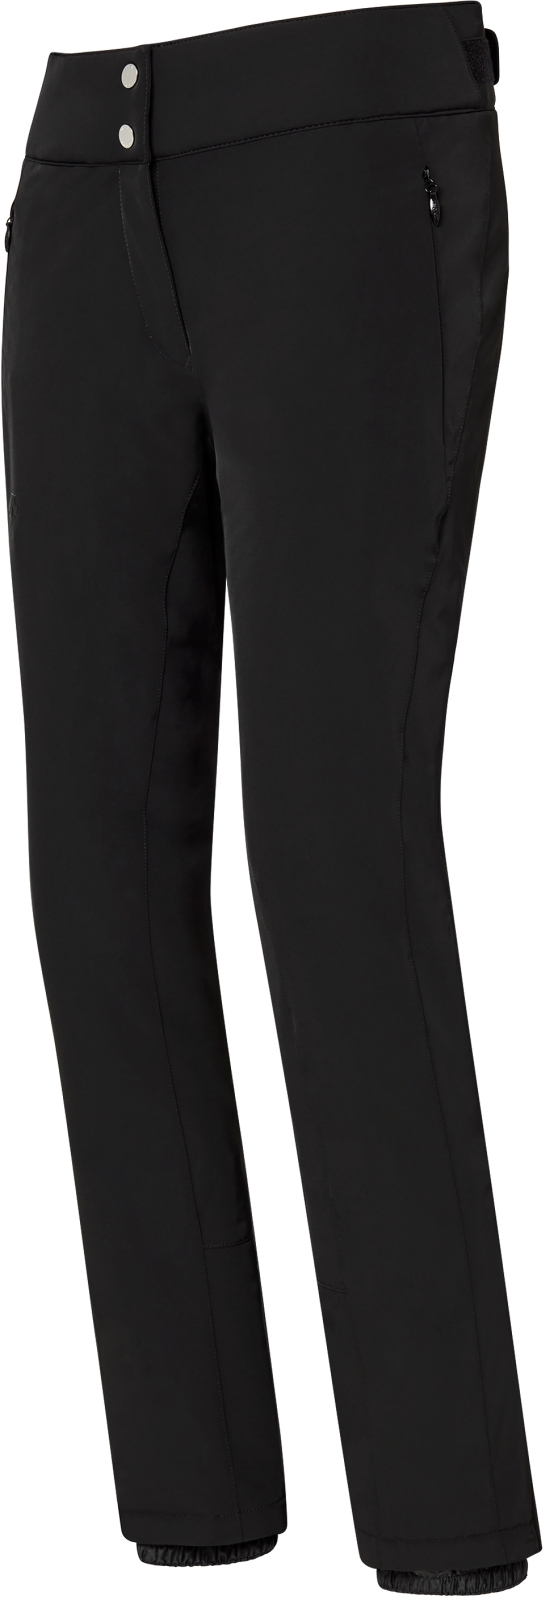 Levně Descente Dámské lyžařské kalhoty Giselle Insulated Pants - Black S